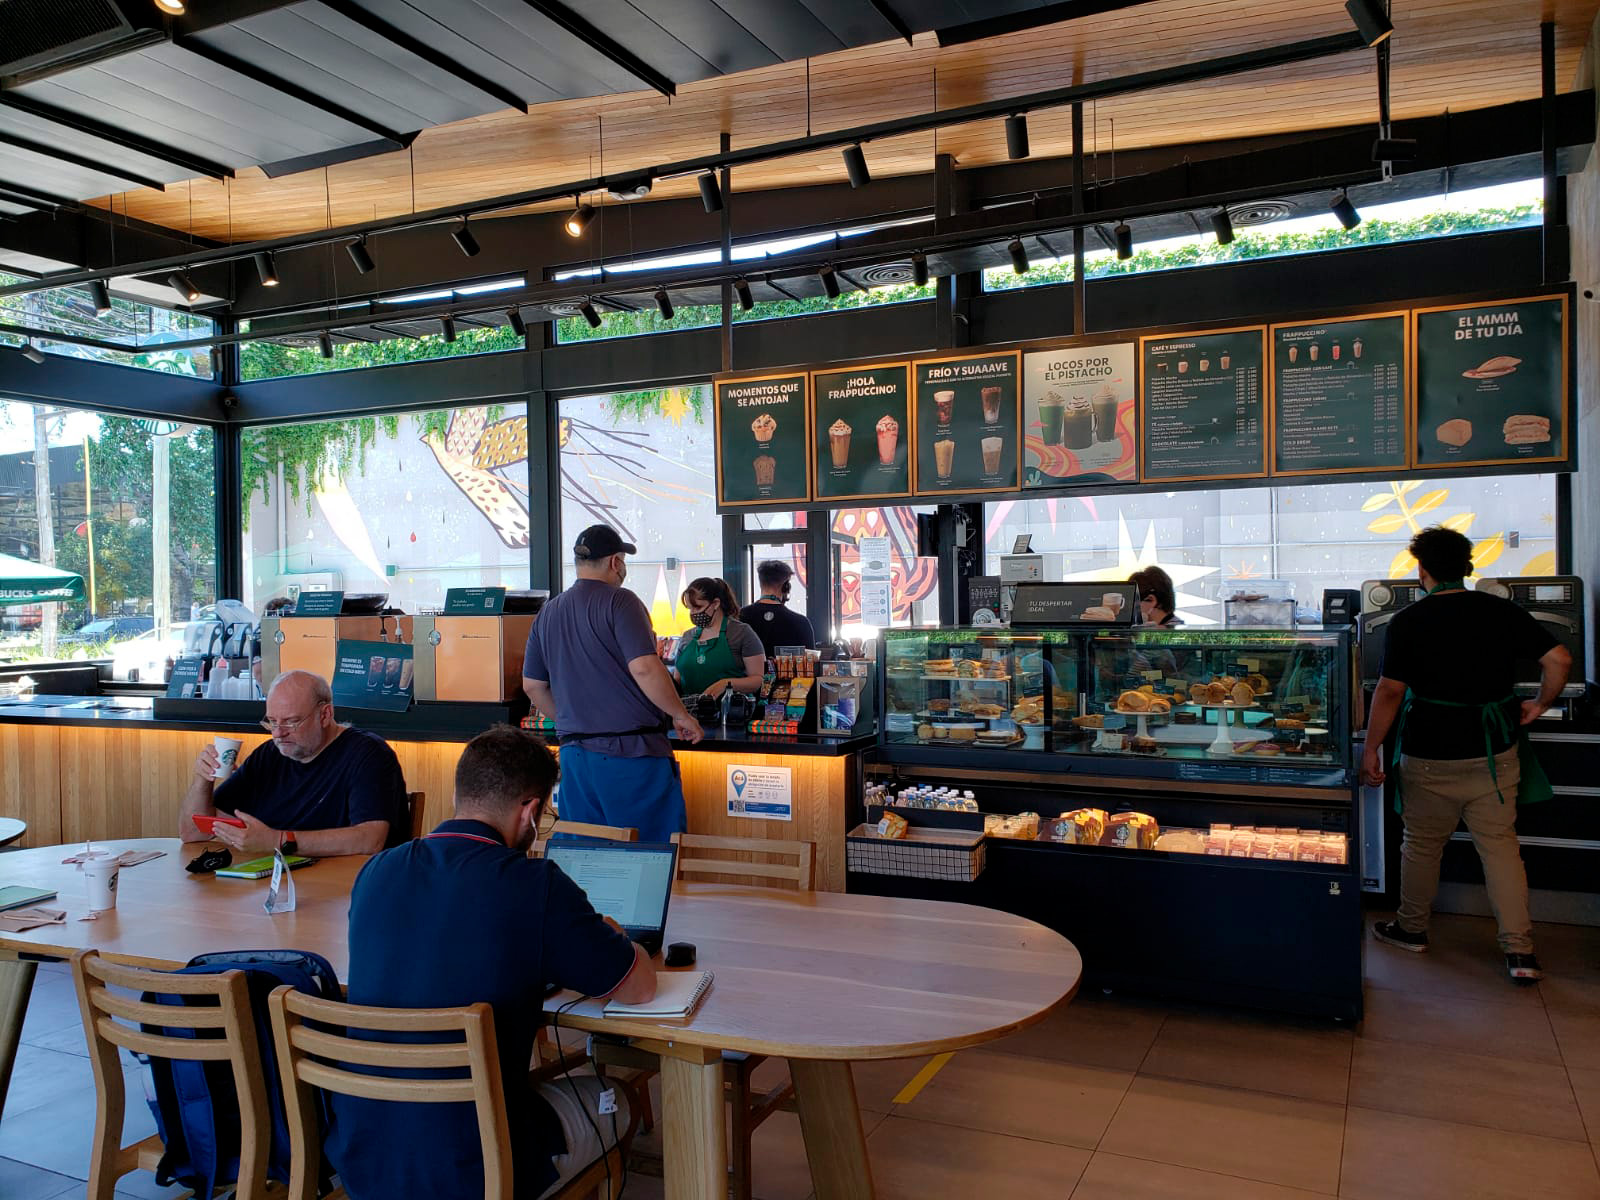 En los inmuebles de comidas rápidas o cafeterías de carácter internacional se colocan mesas largas que pueden compartirse entre clientes que no se conocen entre sí